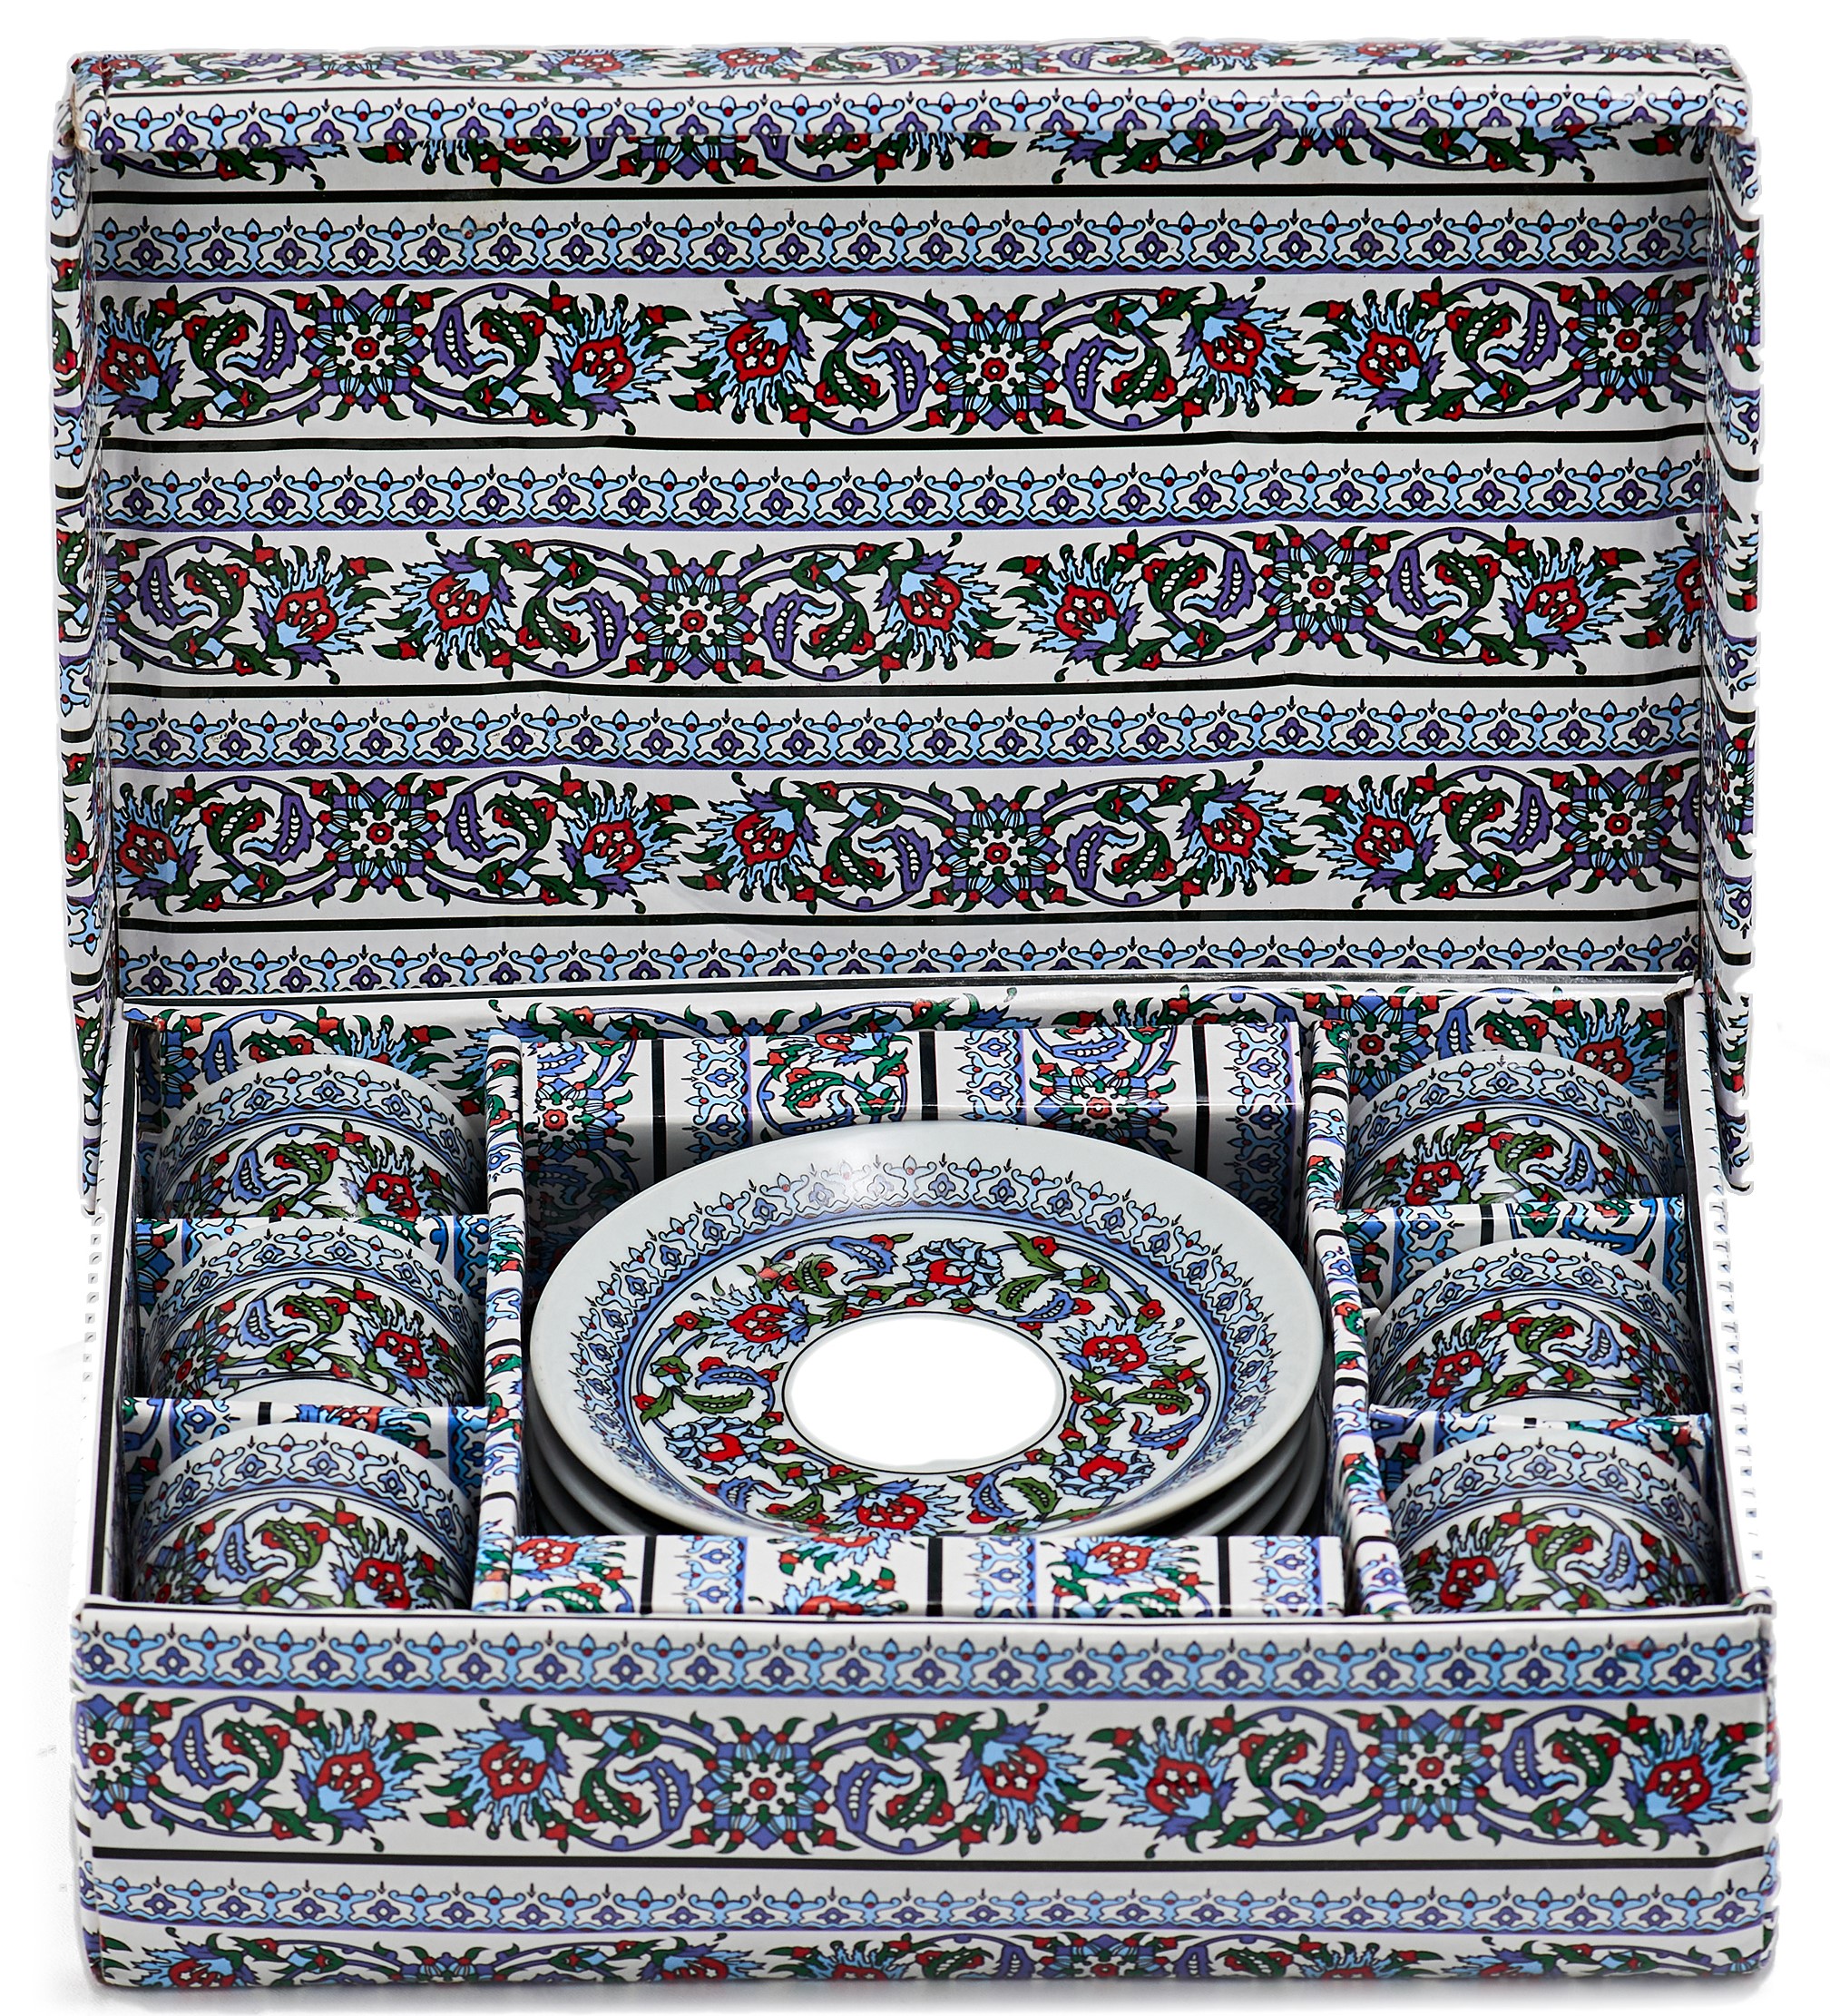 Турецький набір кераміка (З орнаментом синій)